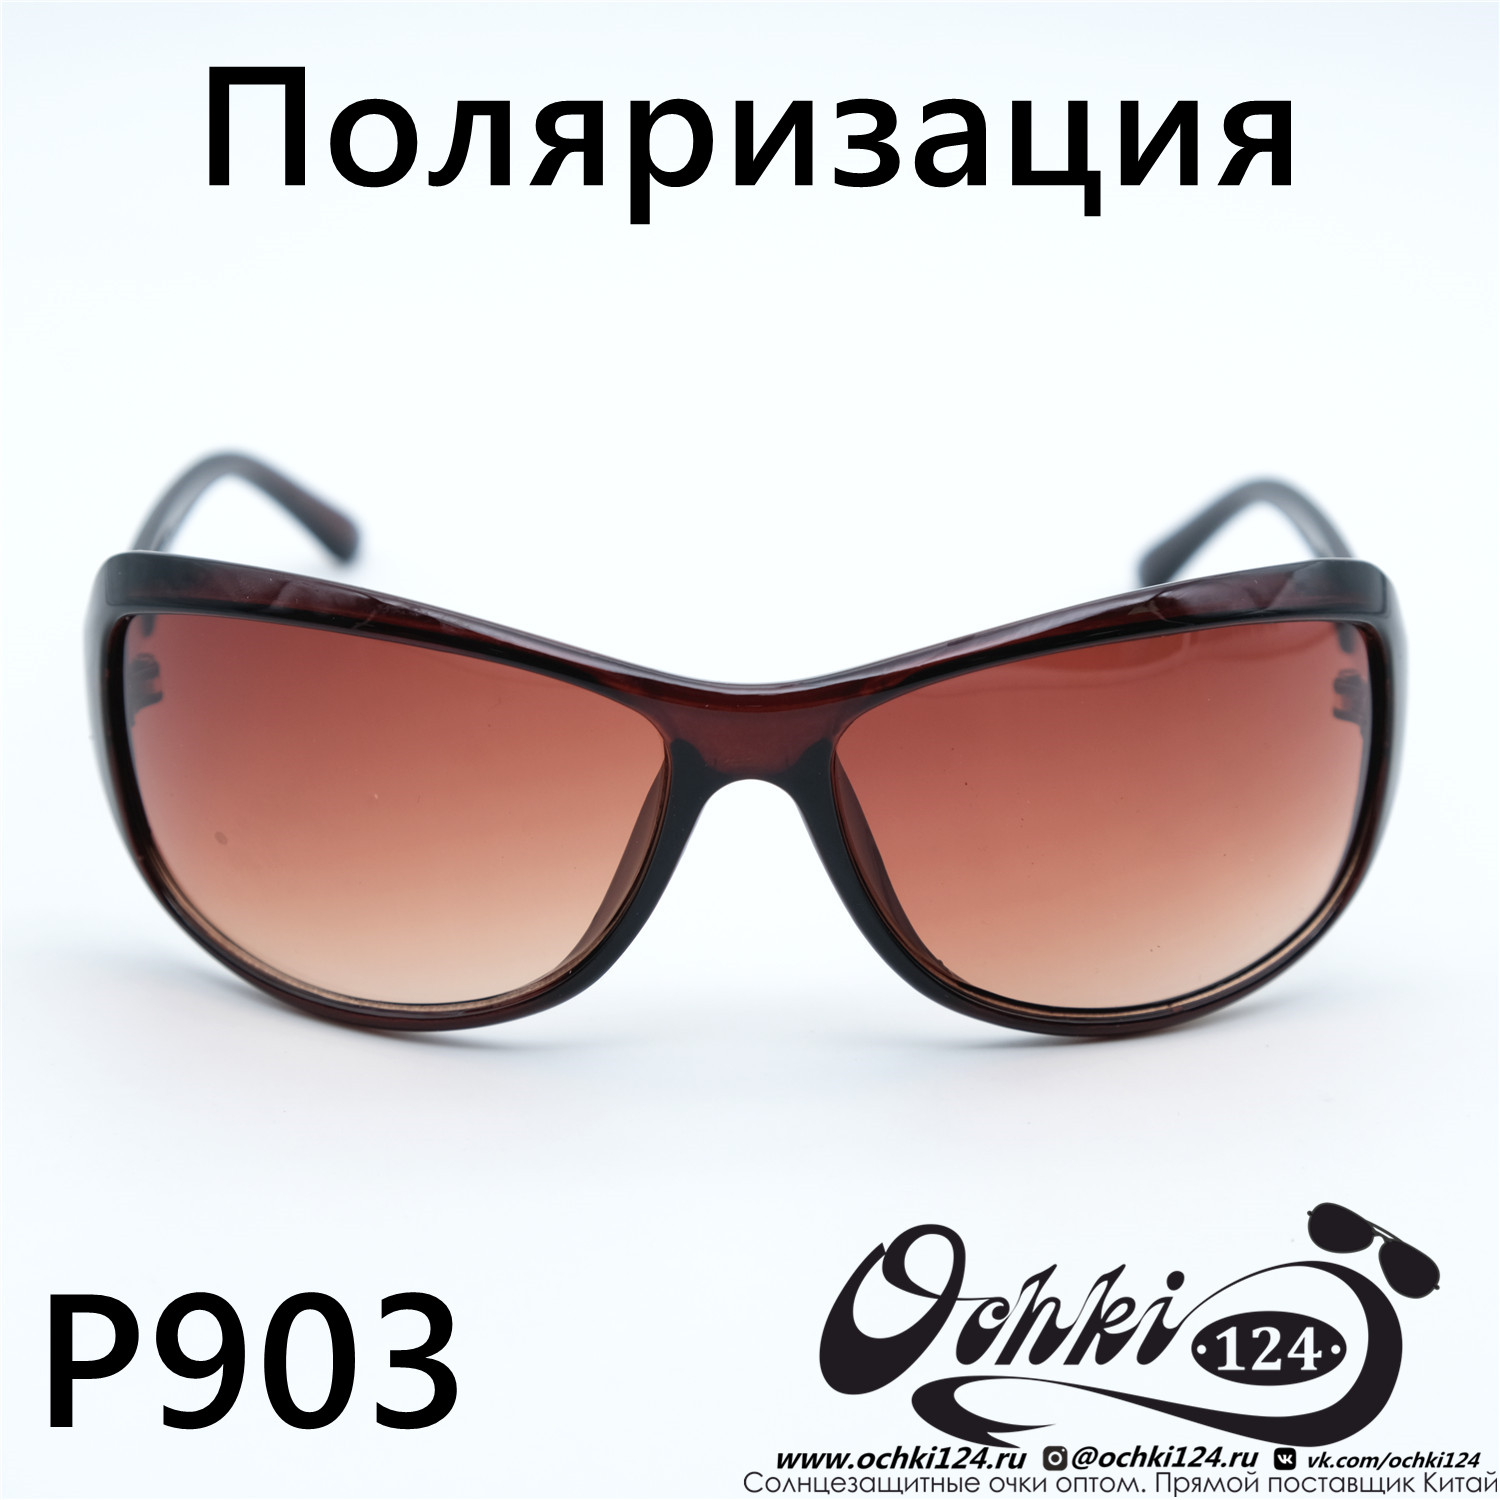  Солнцезащитные очки картинка Женские Prius Polarized Стандартные P903-C2 